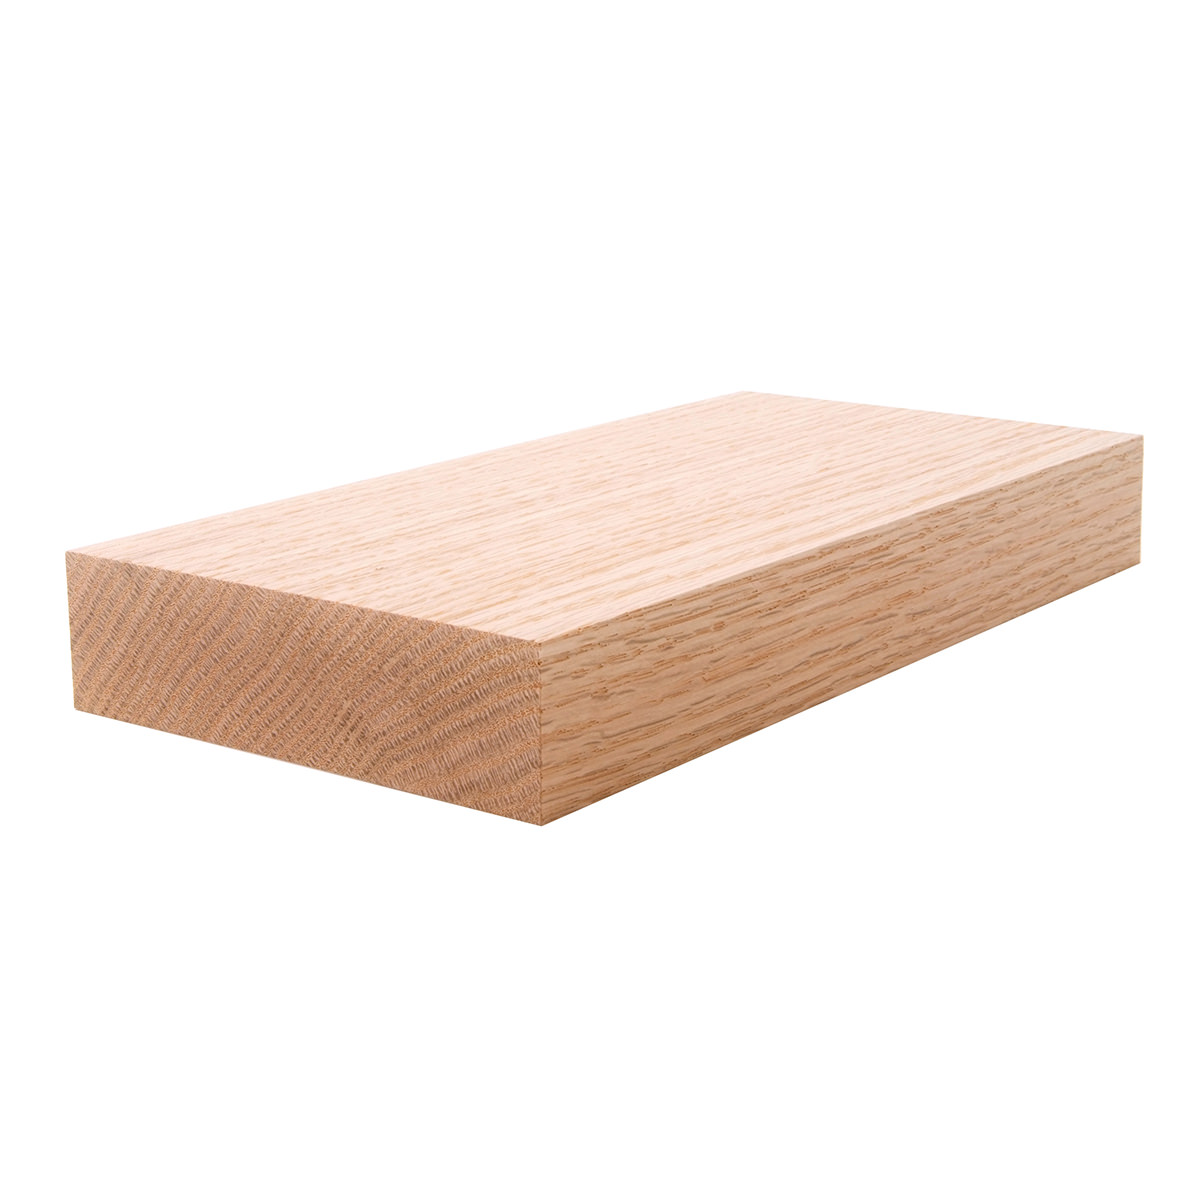  2x6  1 1 2 x 5 1 2 Red Oak S4S Lumber Boards Flat 